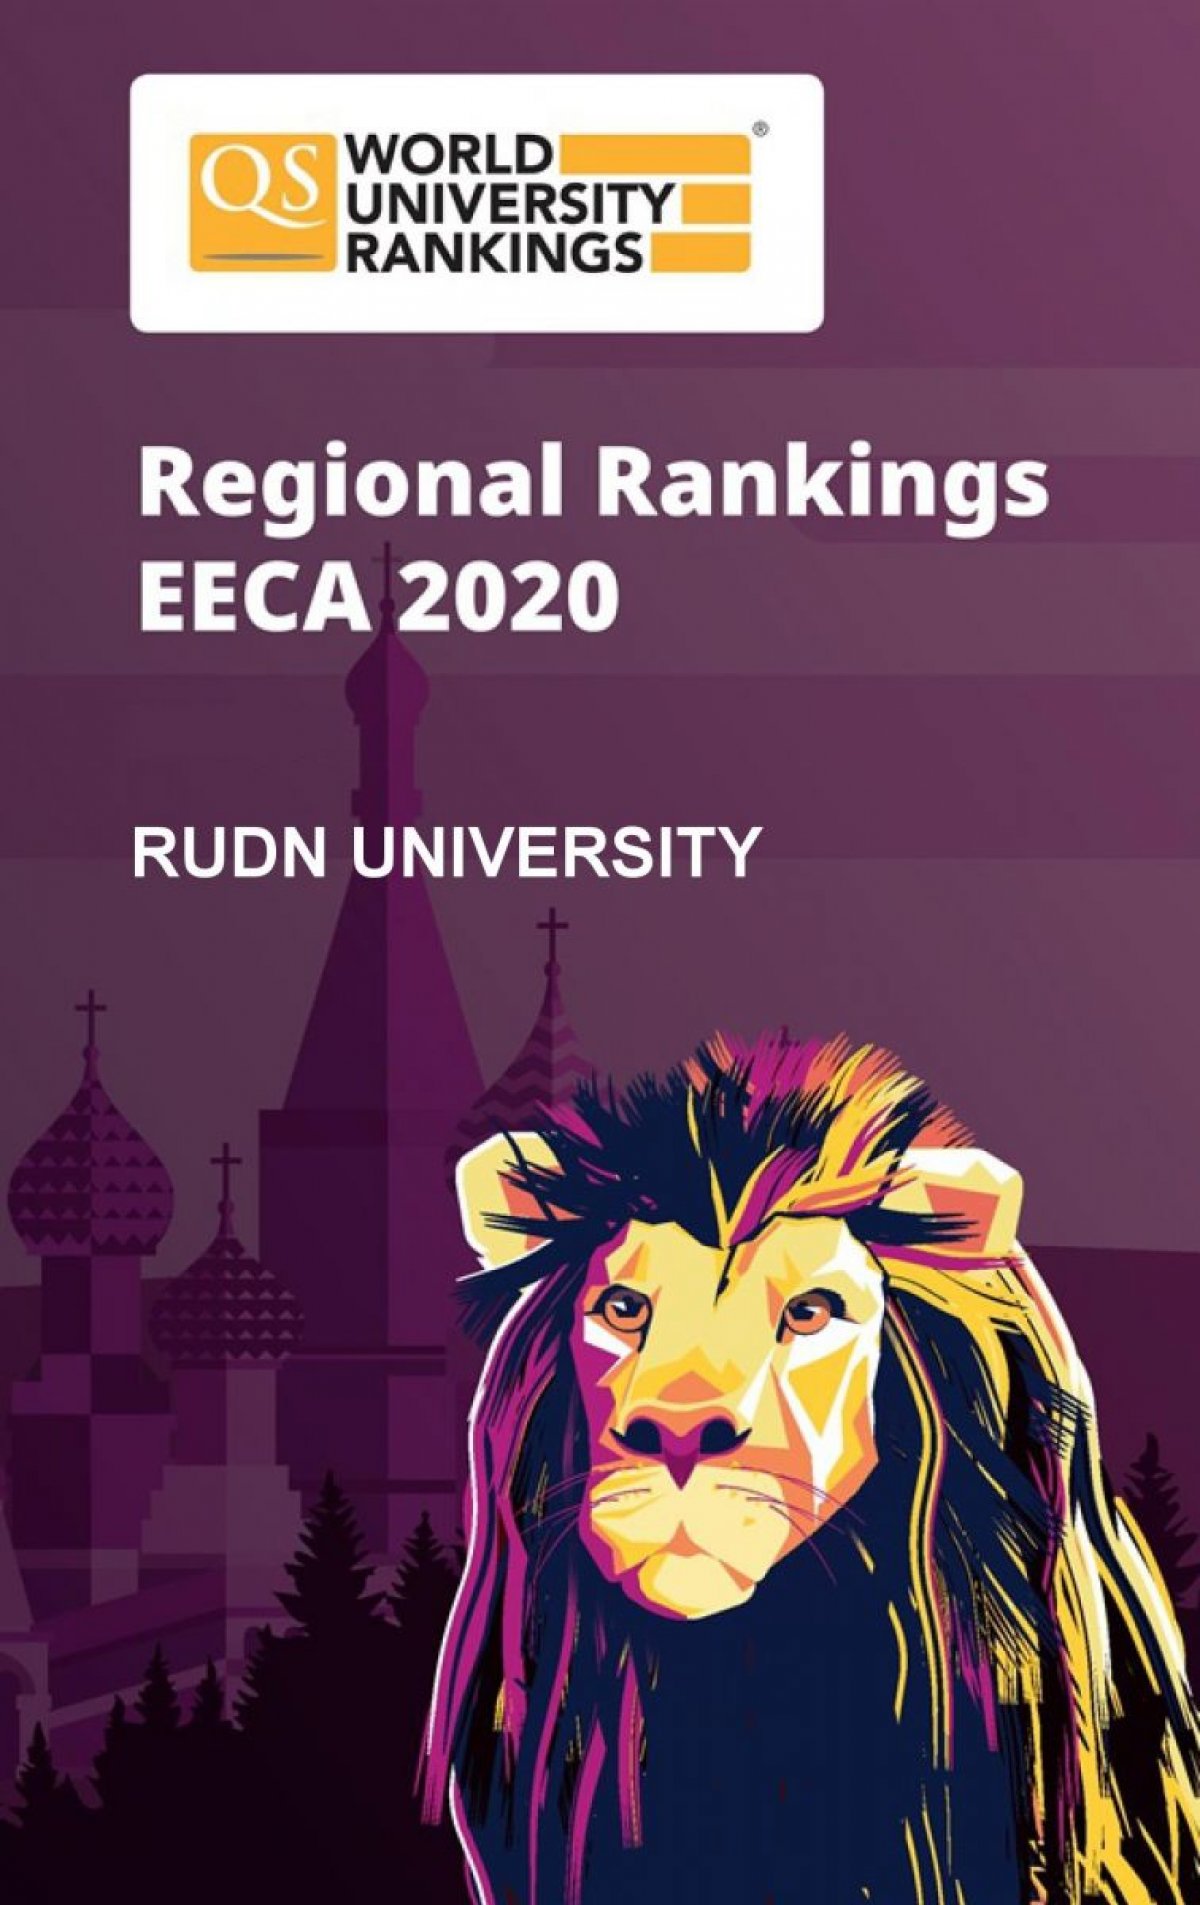 РУДН показал самый стремительный рост в рейтинге QS University Rankings: Emerging Europe & Central Asia 🚀